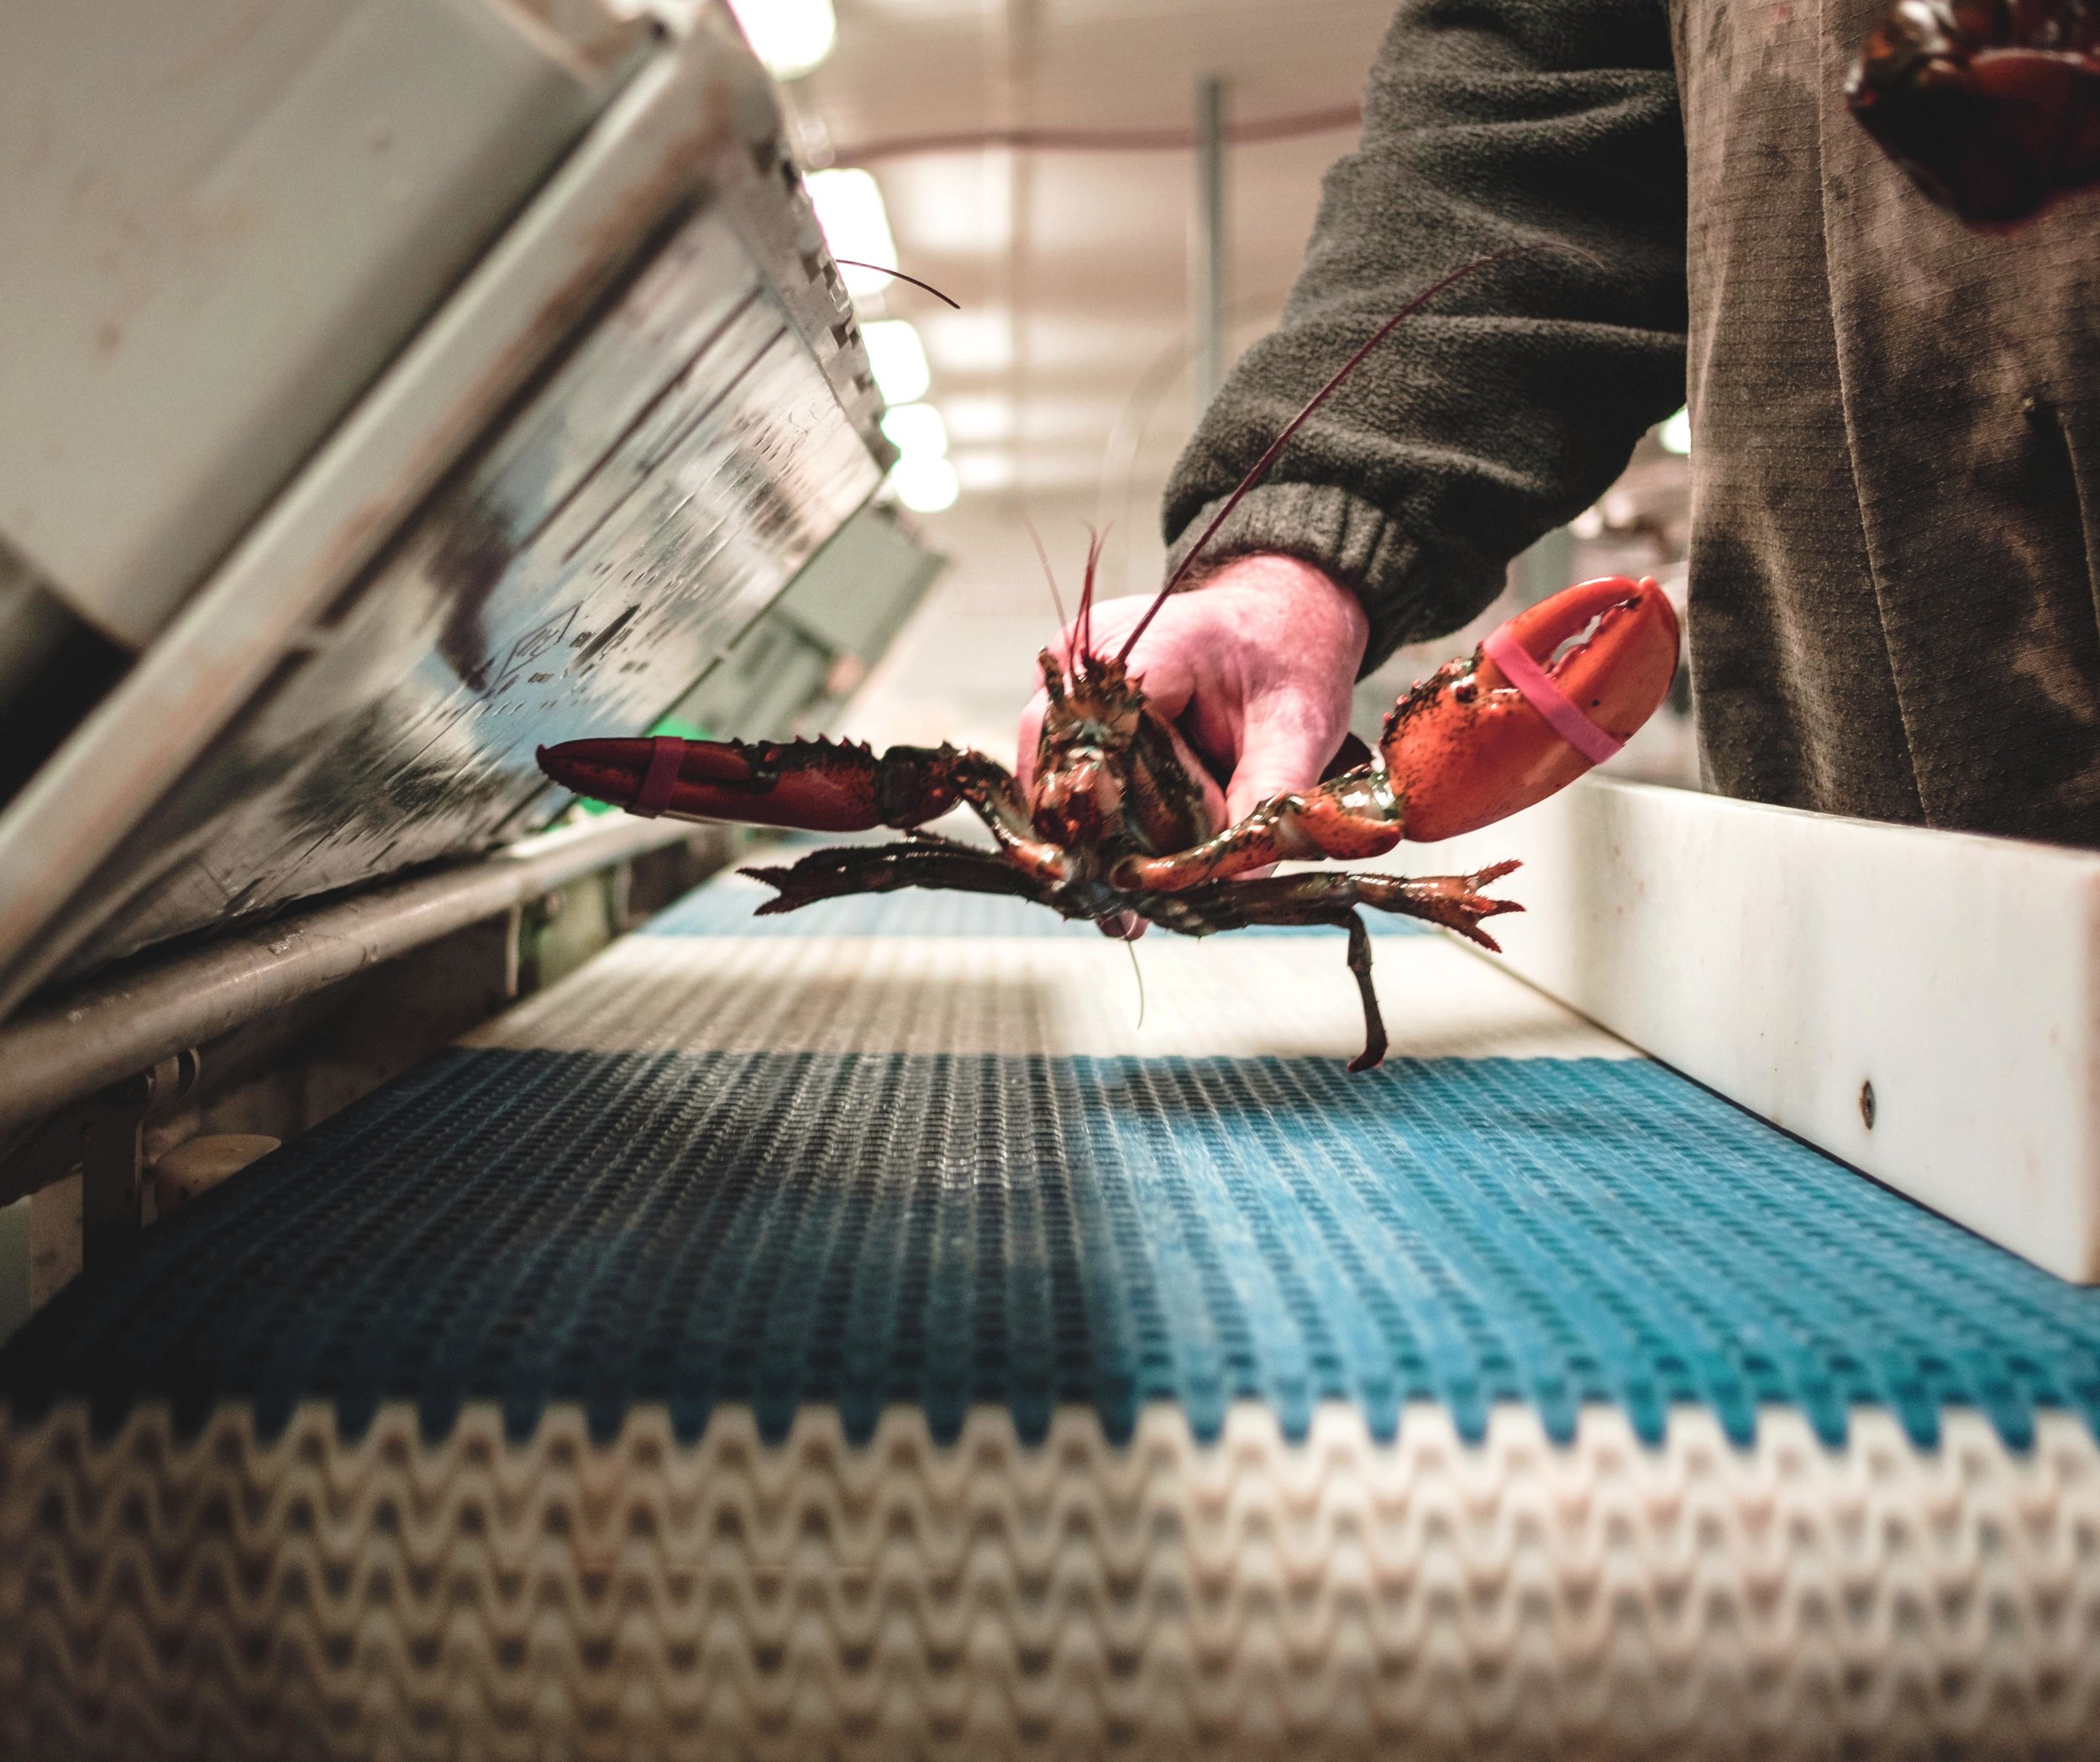 Lobster conveyor belt.jpg